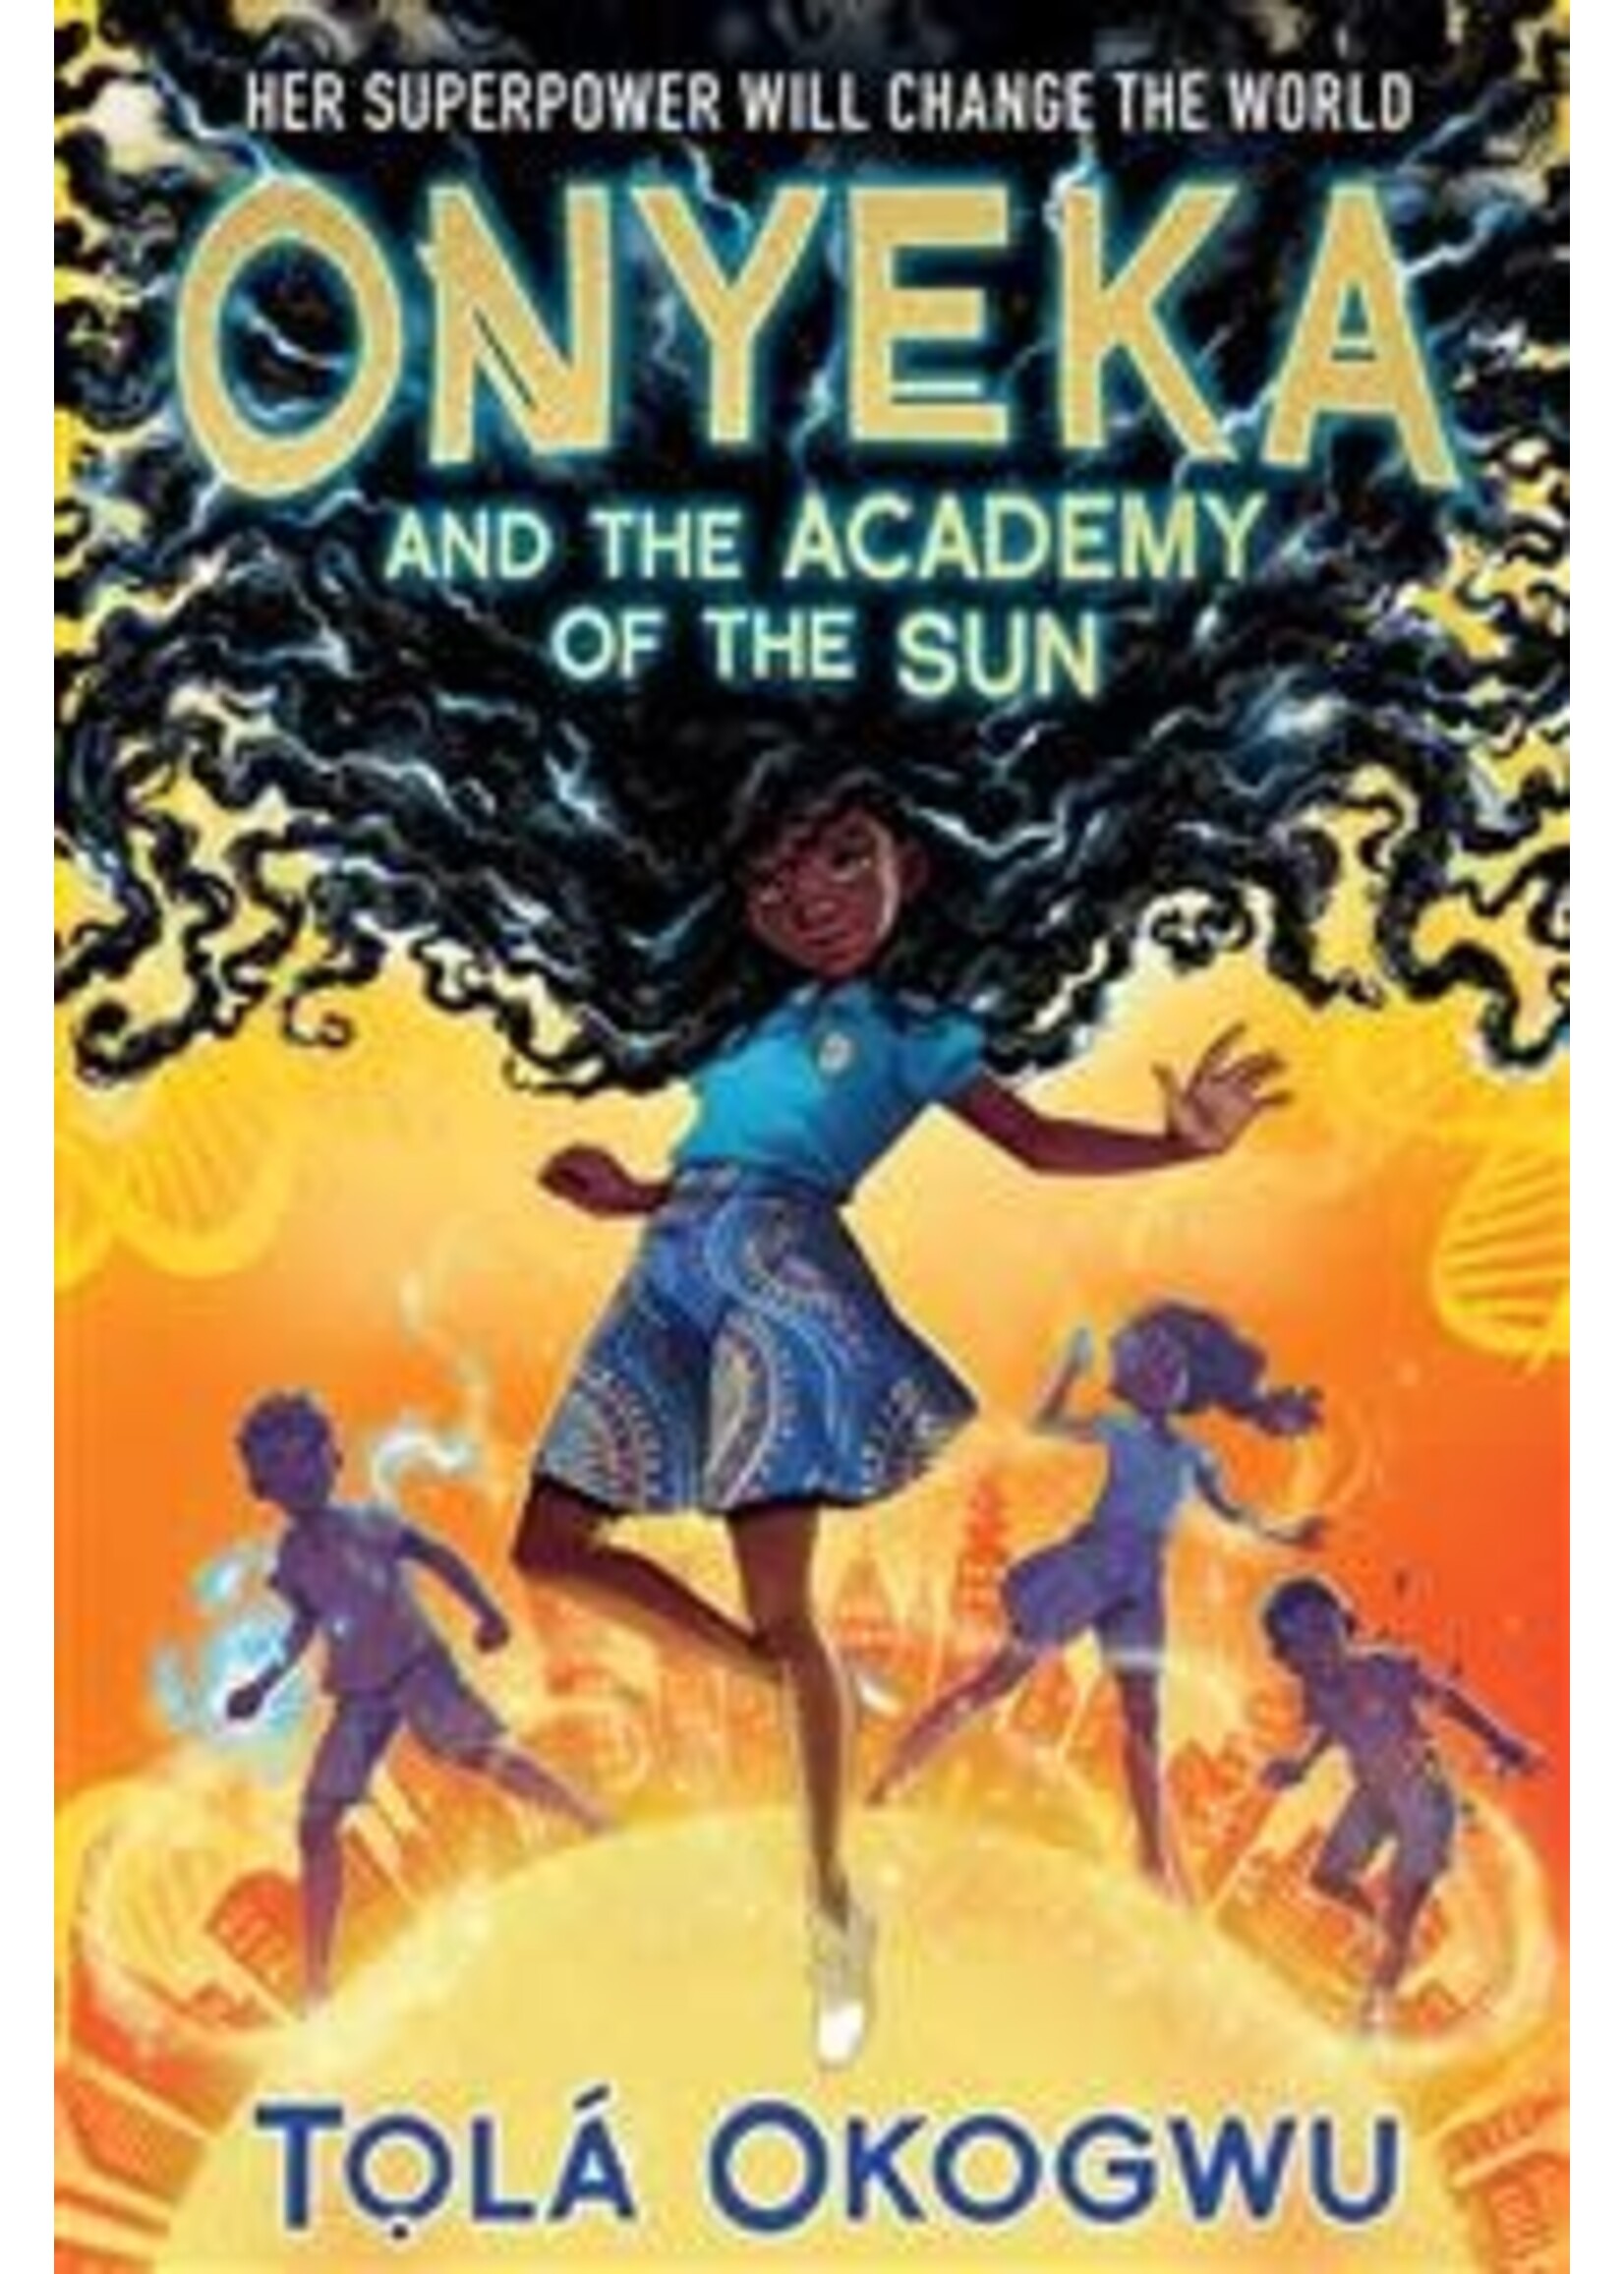 Onyeka and the Academy of the Sun (Onyeka #1) by Tolá Okogwu